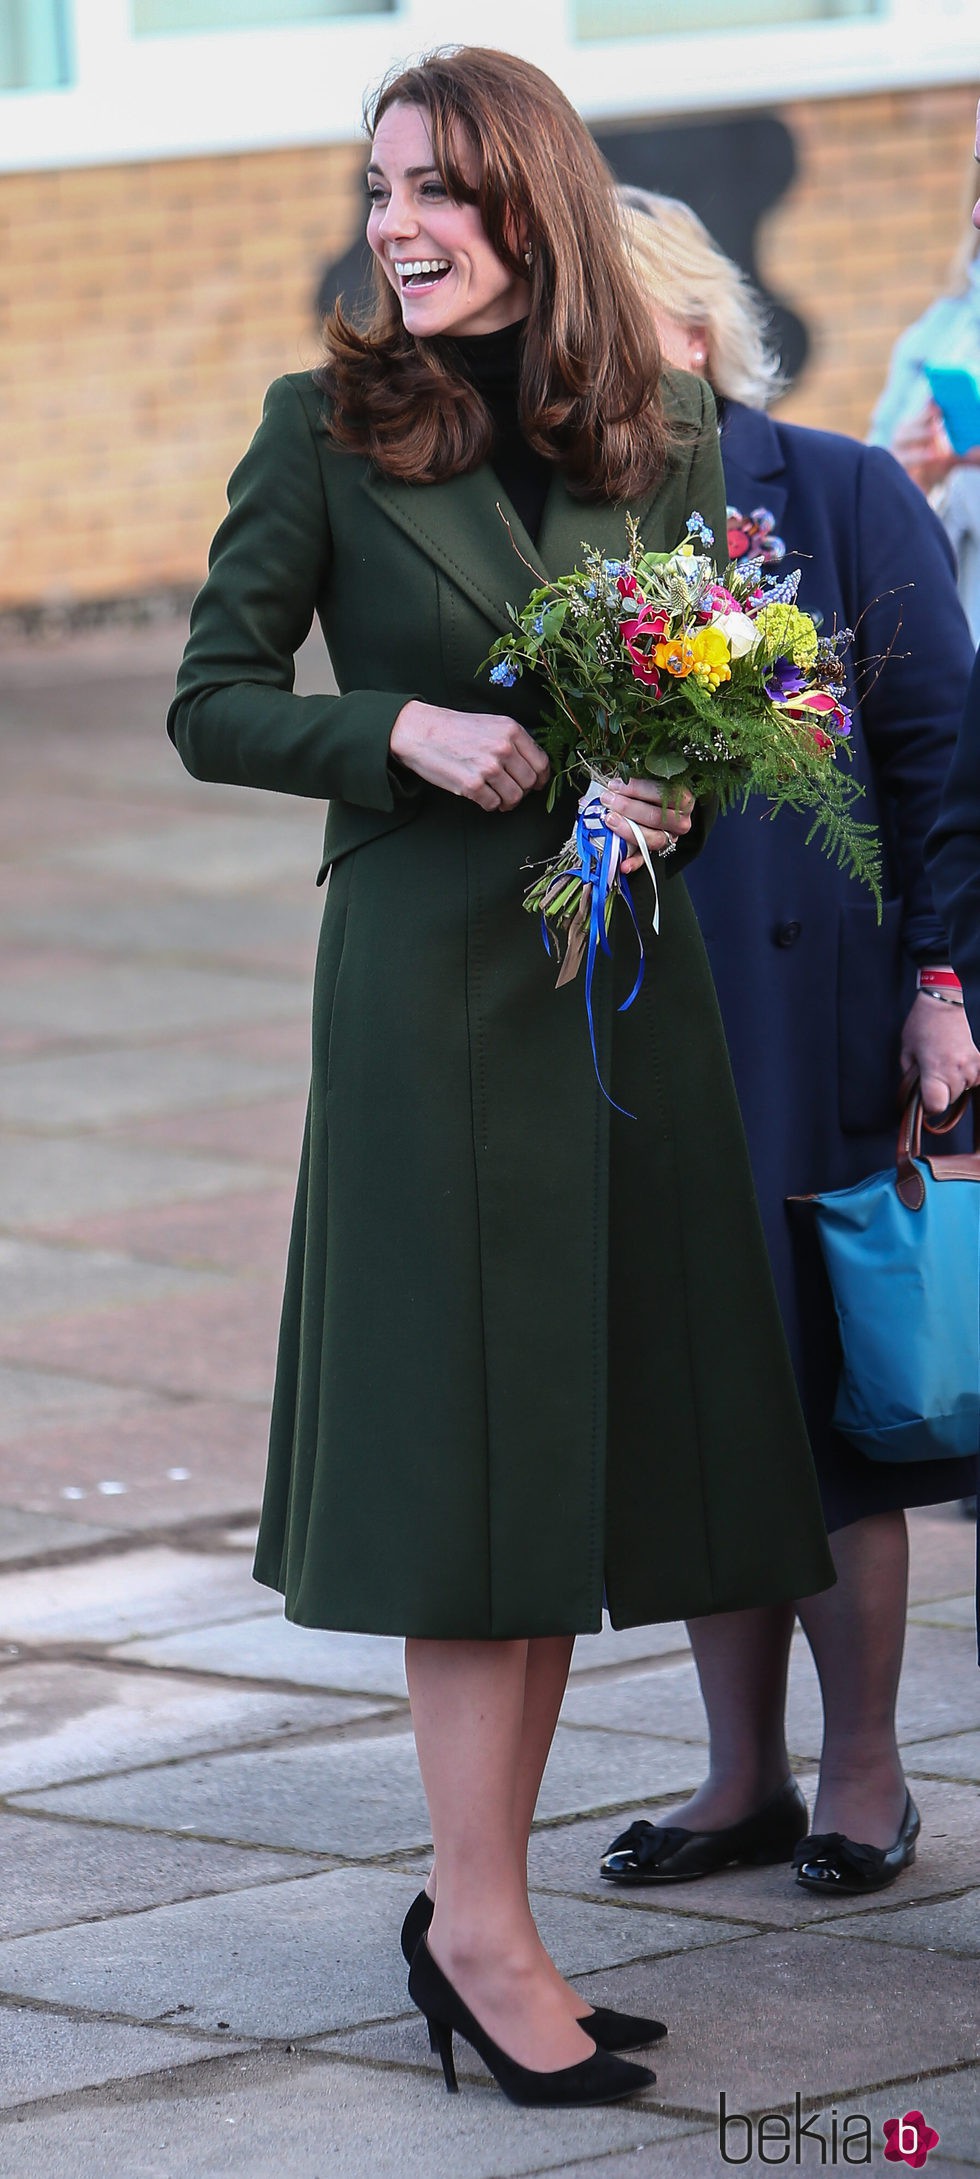 Kate Middleton, sonriente en su visita a una escuela en Londres